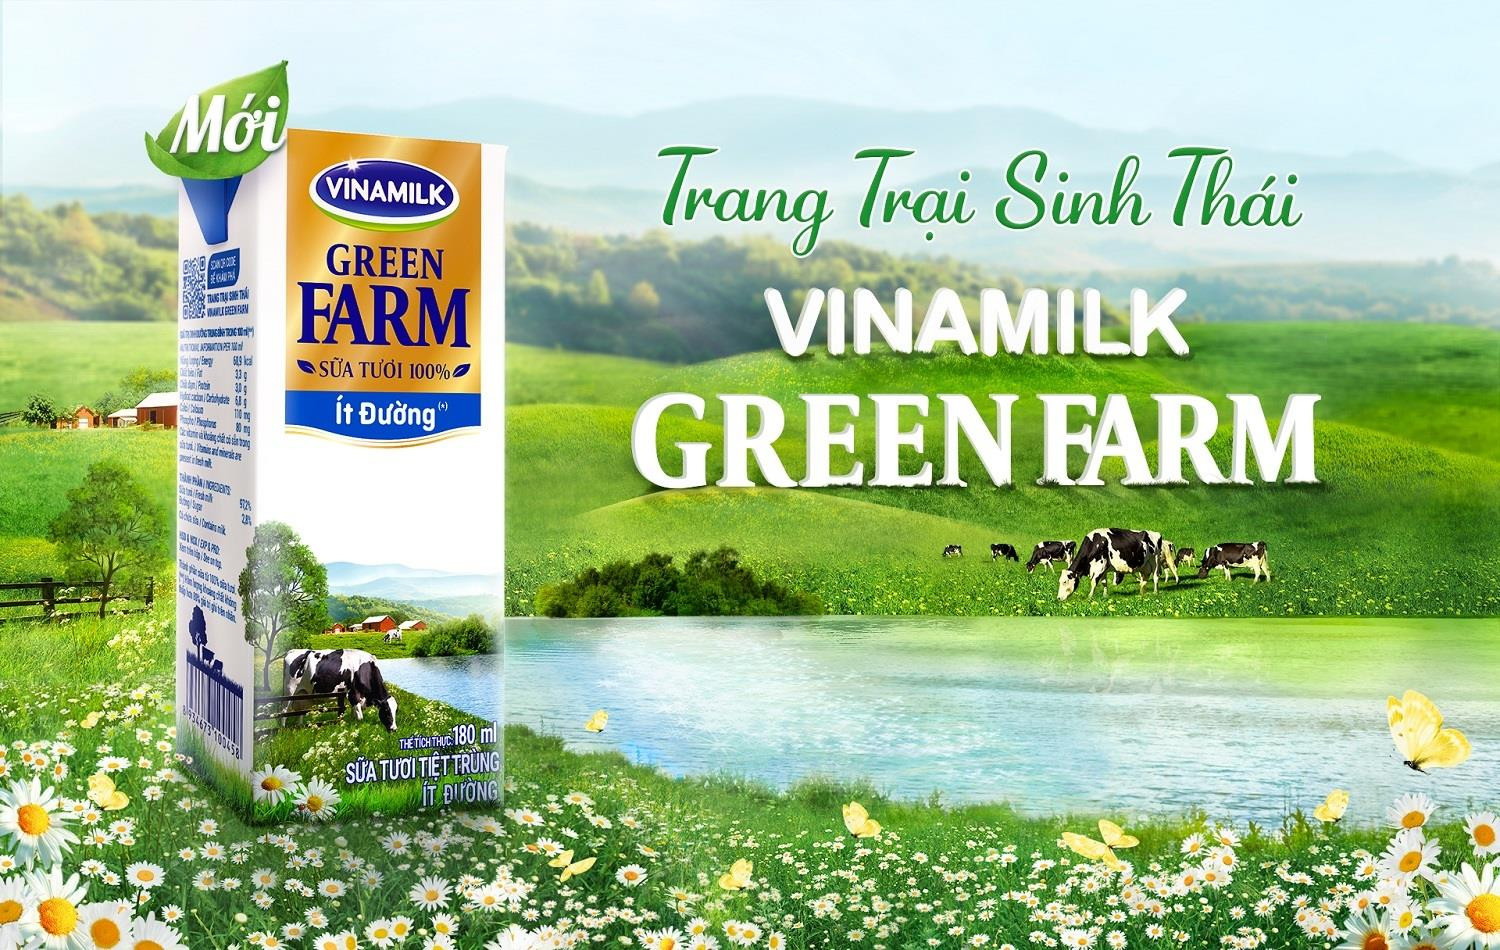 Vinamilk Green Farm: Mô hình trang trại bò sữa phát triển bền vững - 6